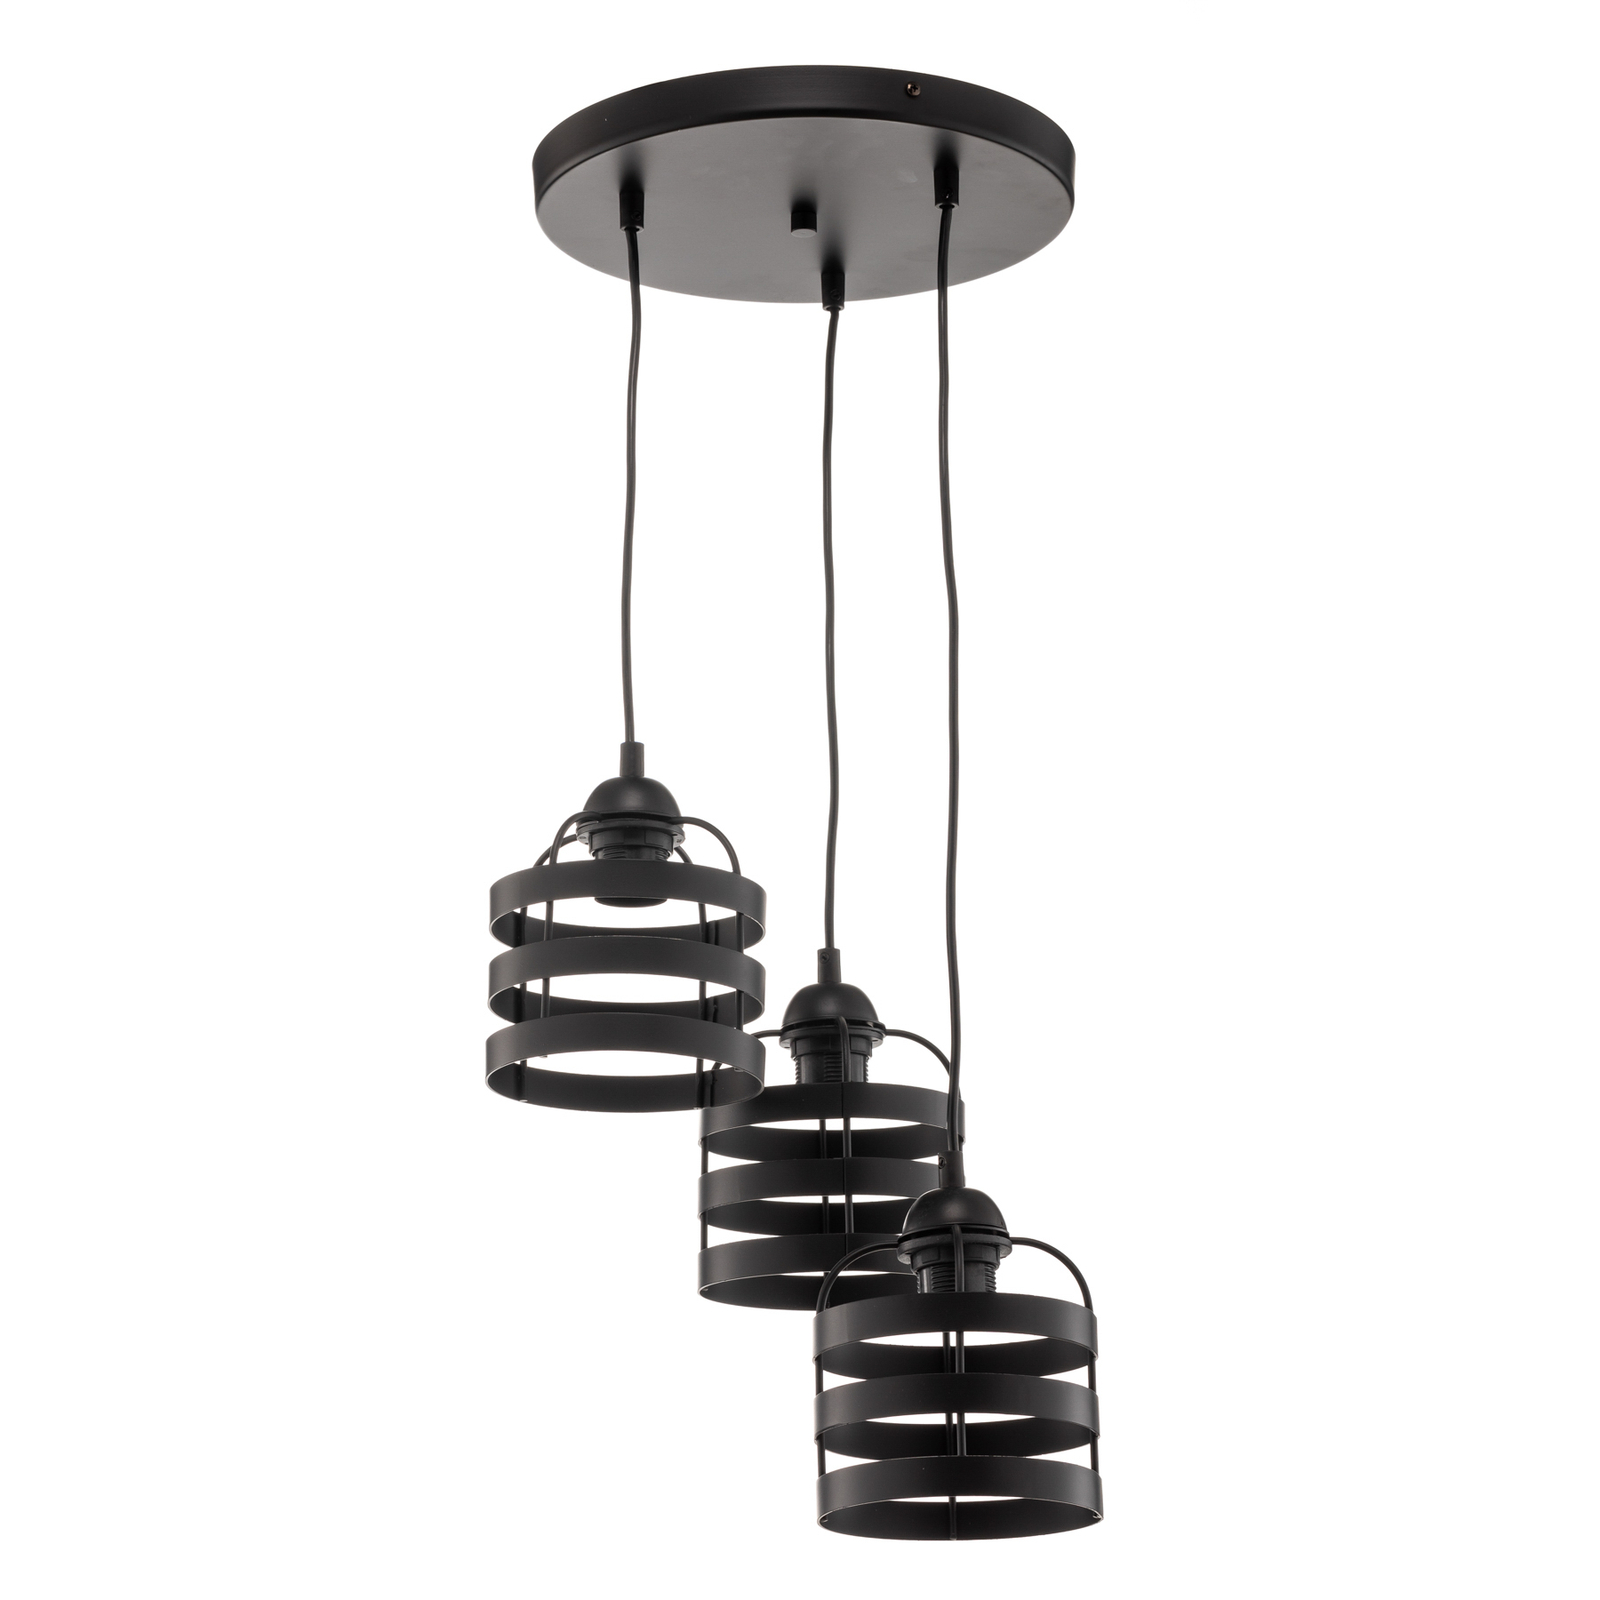 Hanglamp Lars met zwarte ringen, 3-lamps